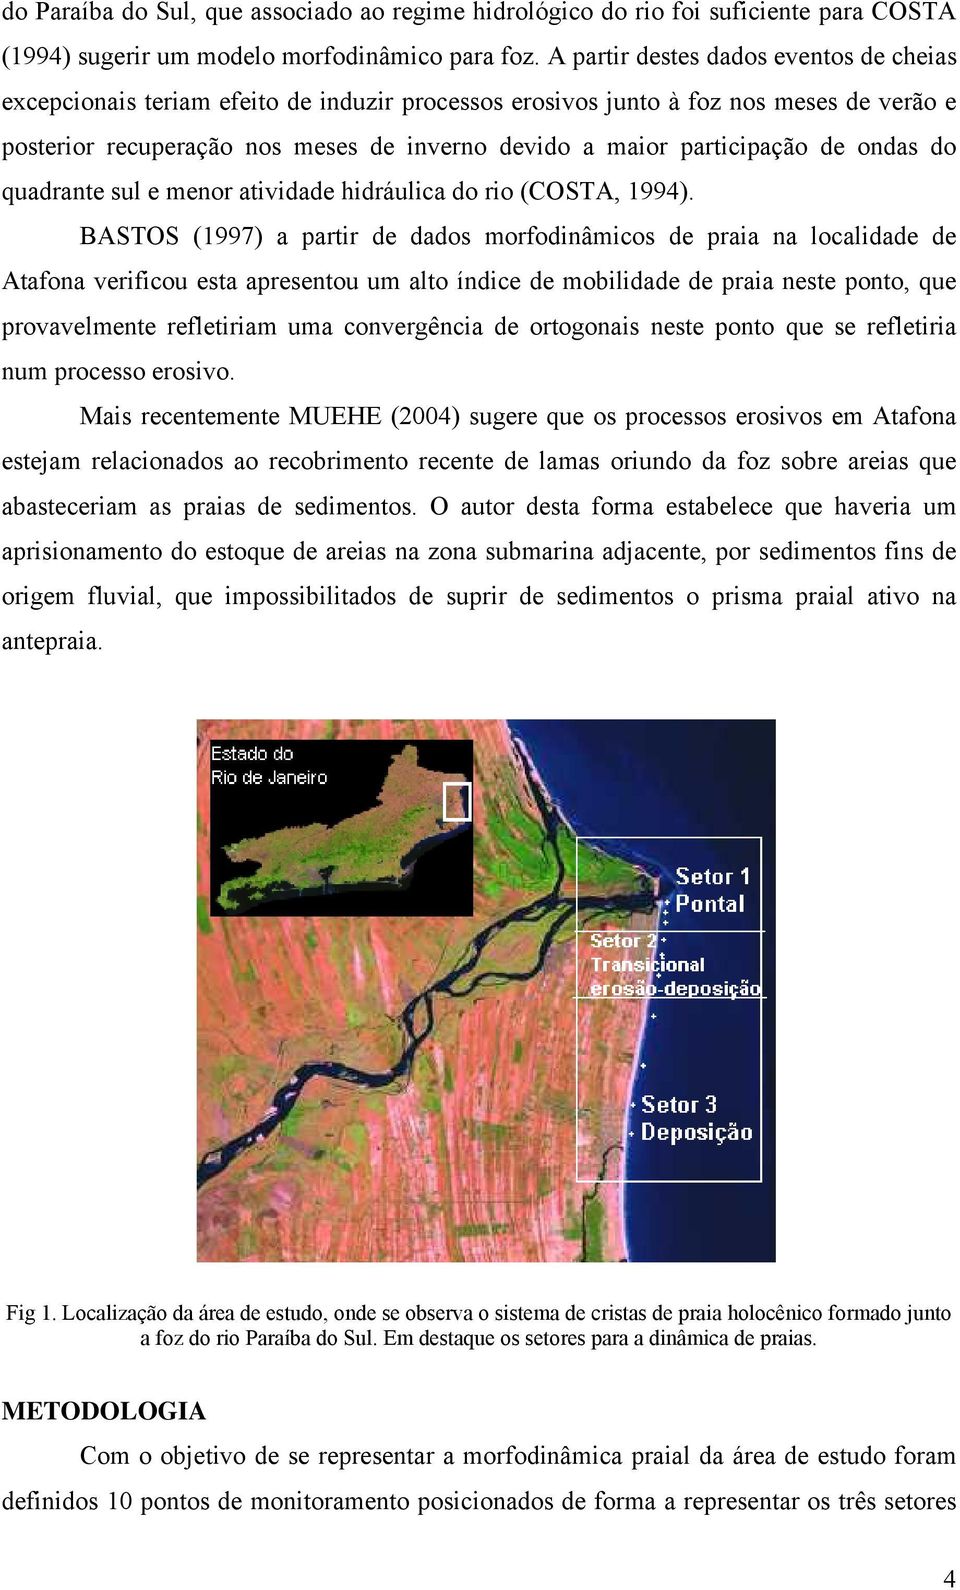 participação de ondas do quadrante sul e menor atividade hidráulica do rio (COSTA, 1994).